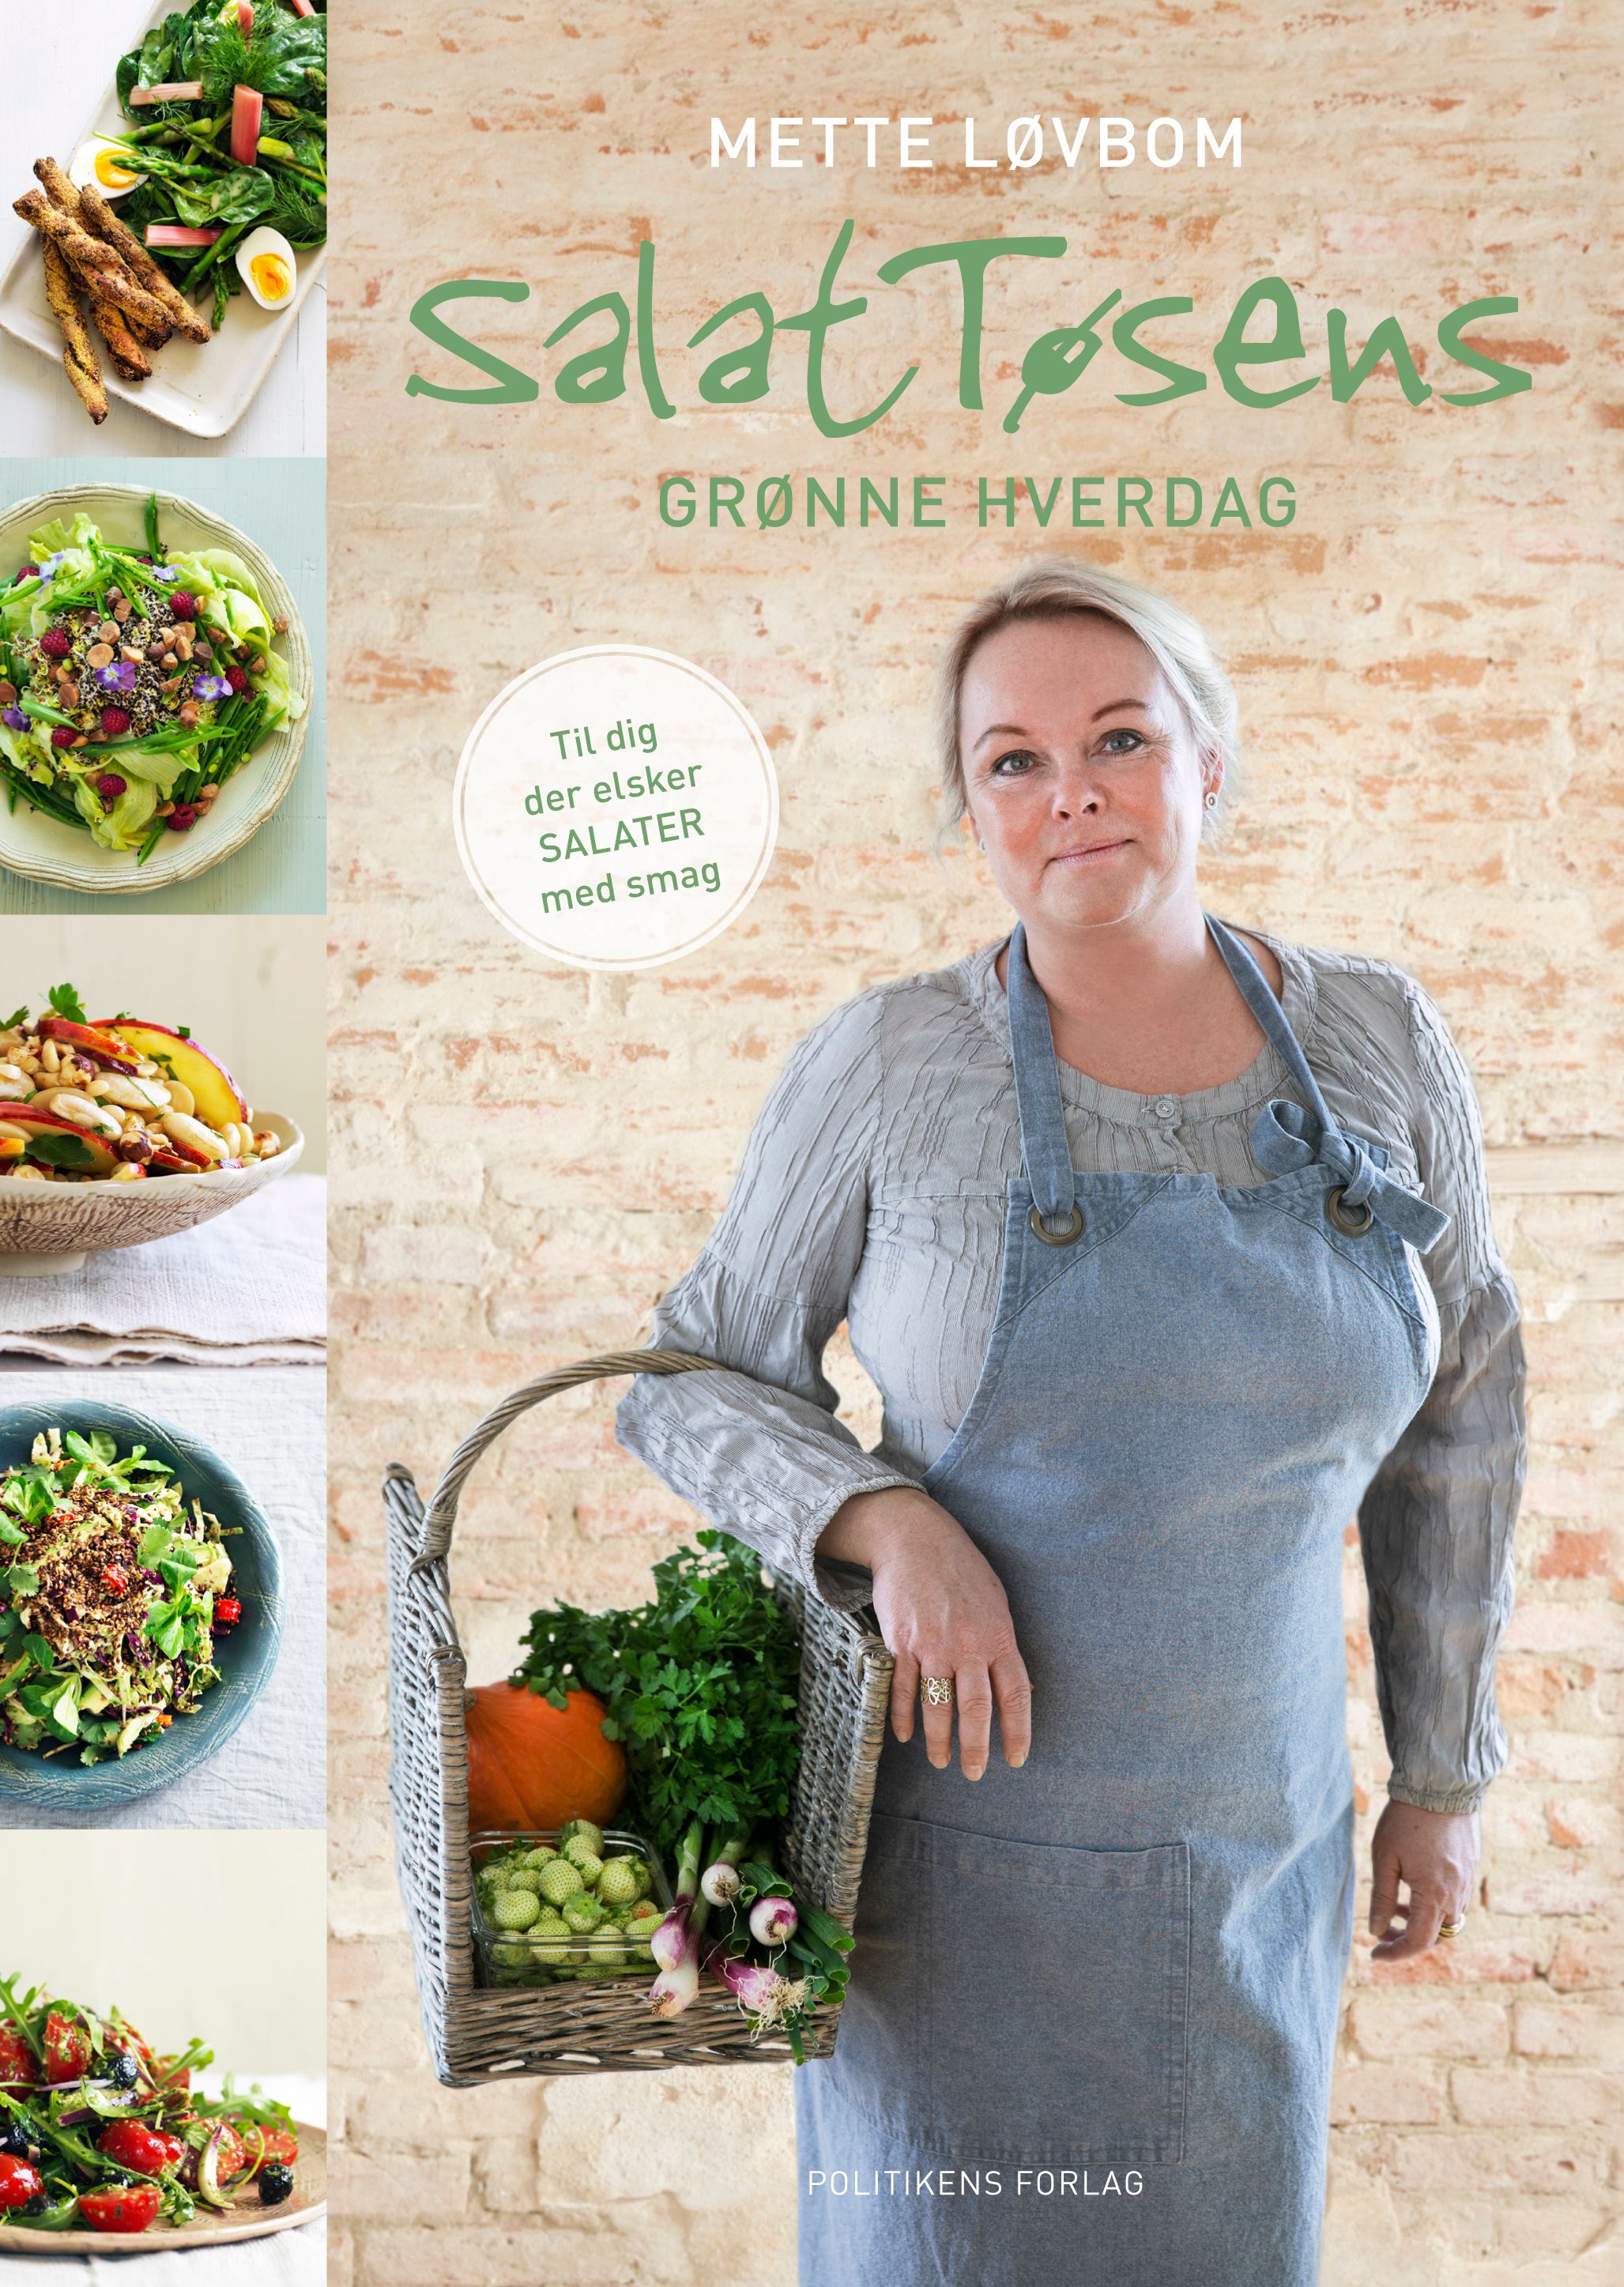 Salattøsens grønne hverdag, e-bok av Mette Løvbom